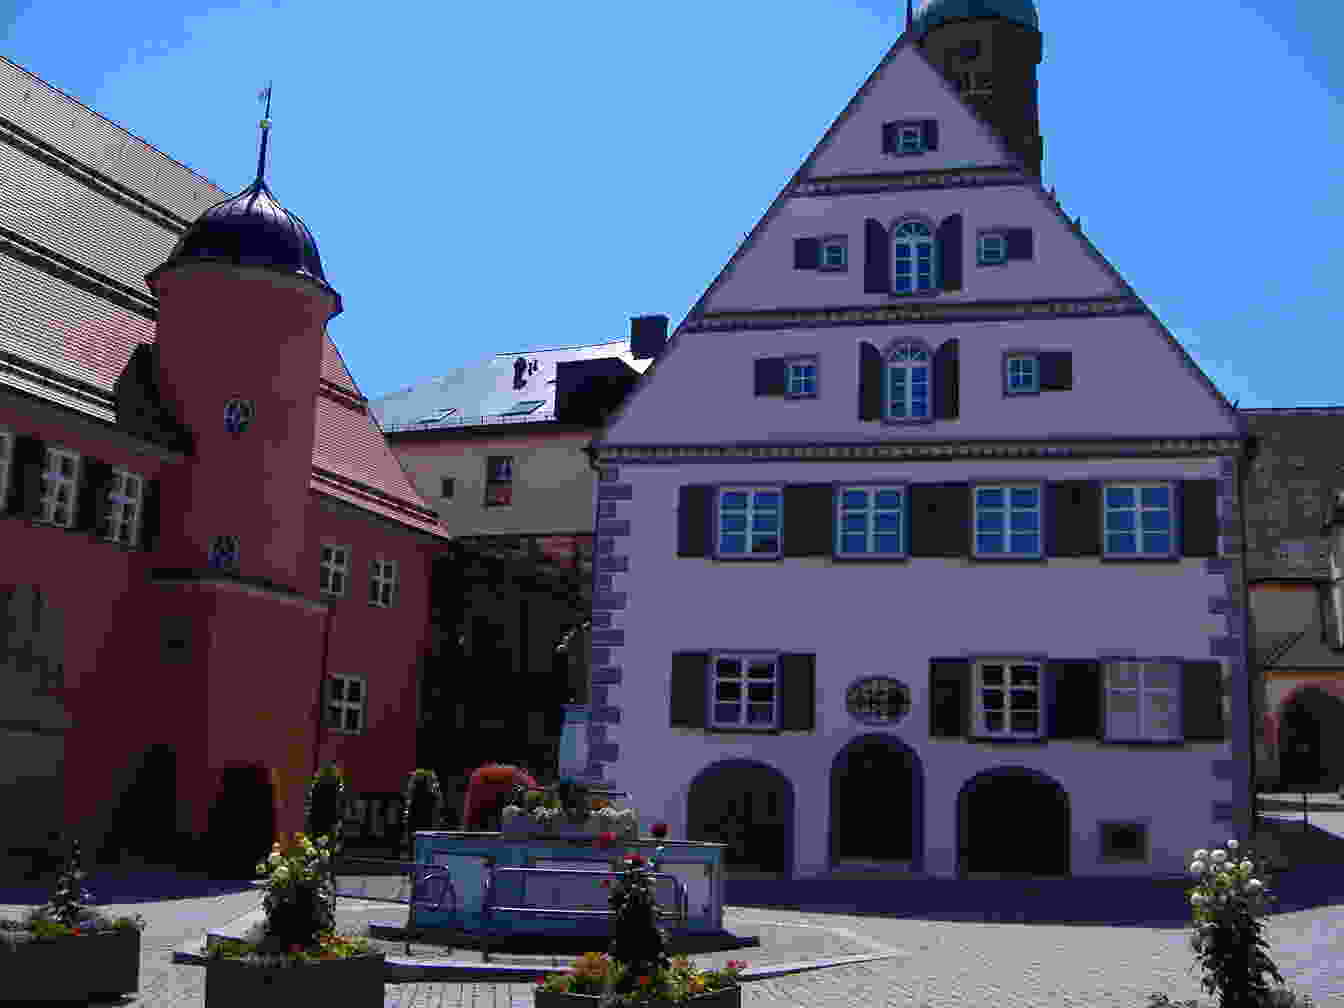 Bild der Stadt Bopfingen